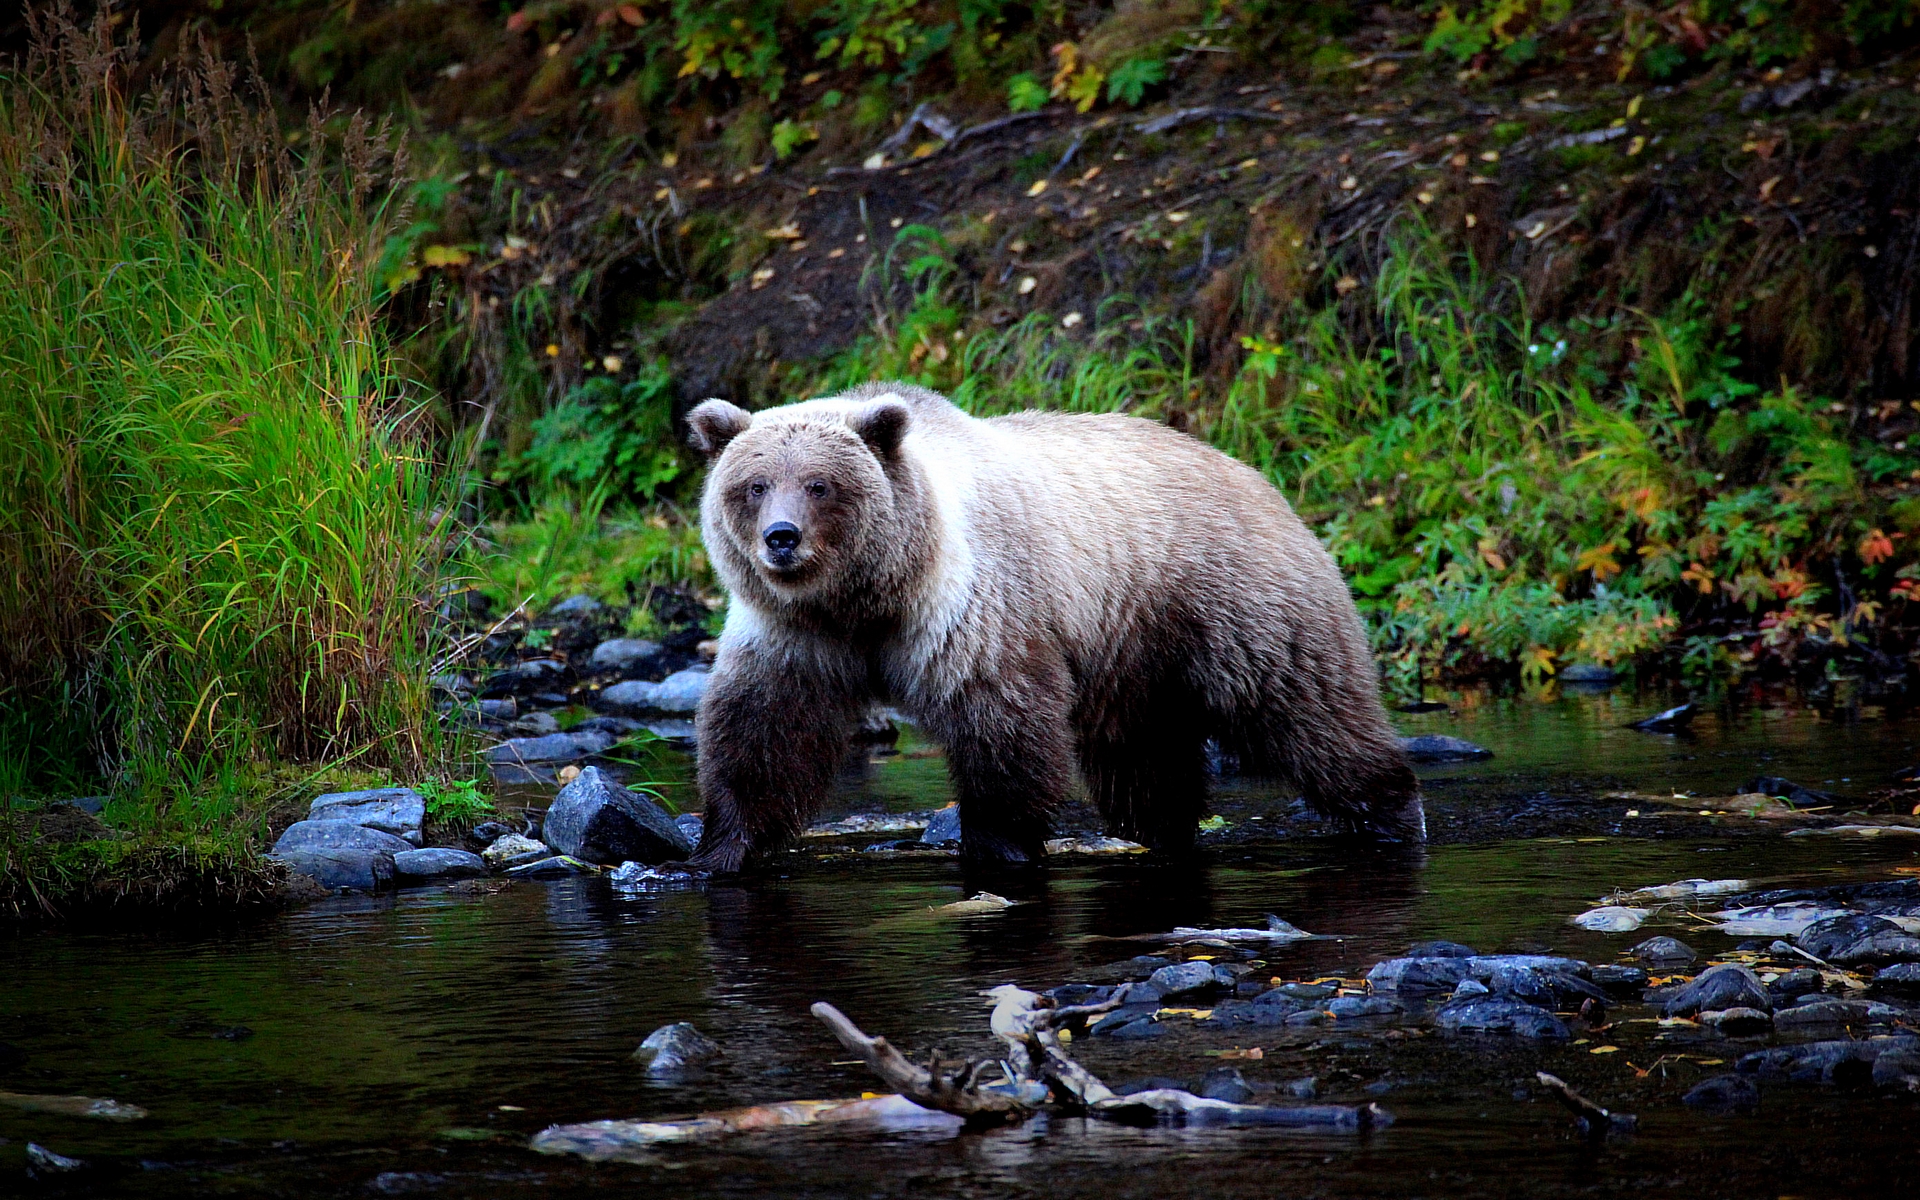 Bear walking across a stream in the wilderness.